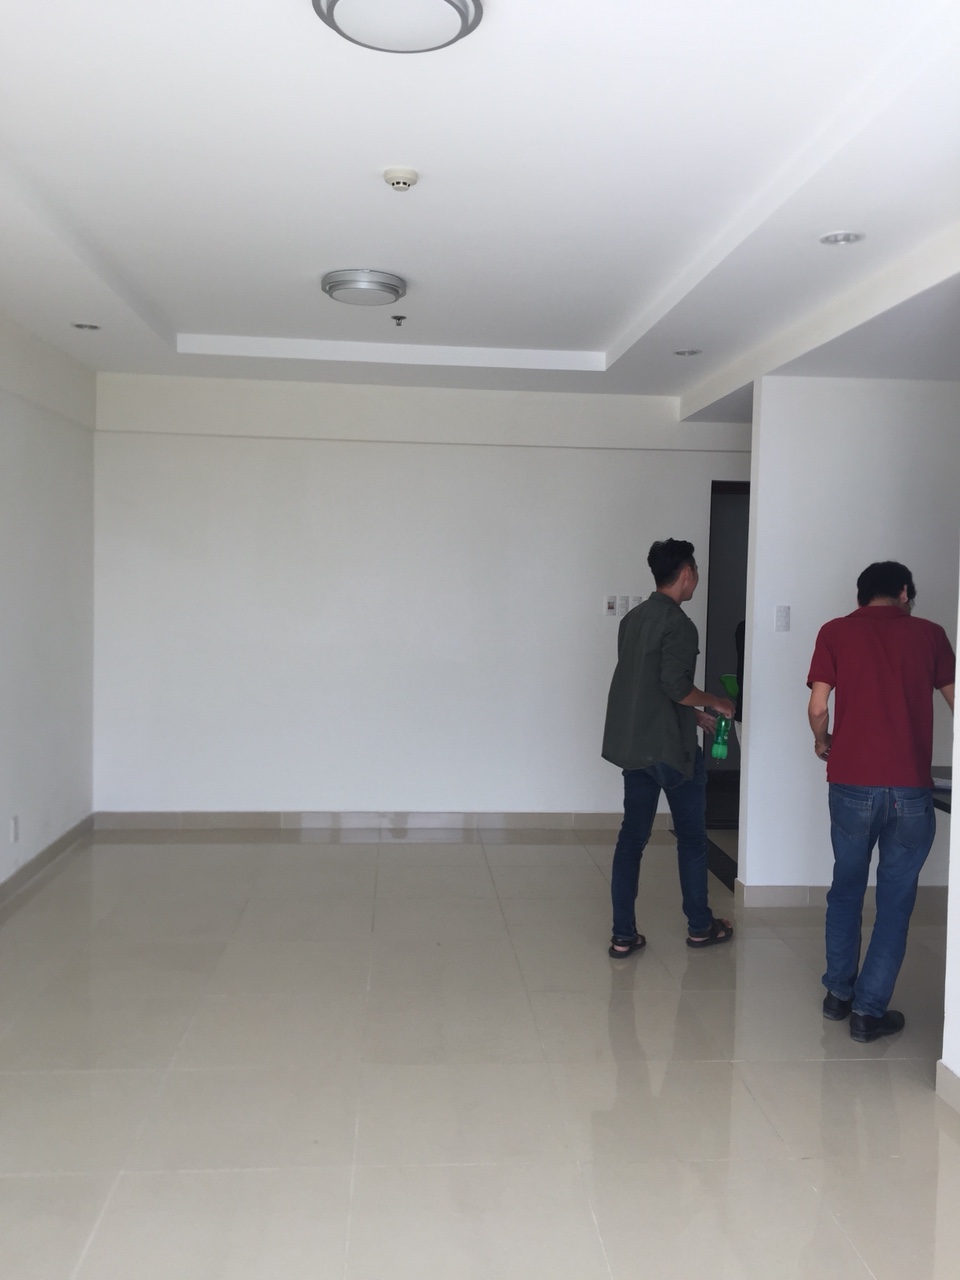 Cho thuê căn hộ chung cư tại dự án căn hộ Hưng Phát, Nhà Bè, TP. HCM, 85m2, giá 9.0 triệu/tháng